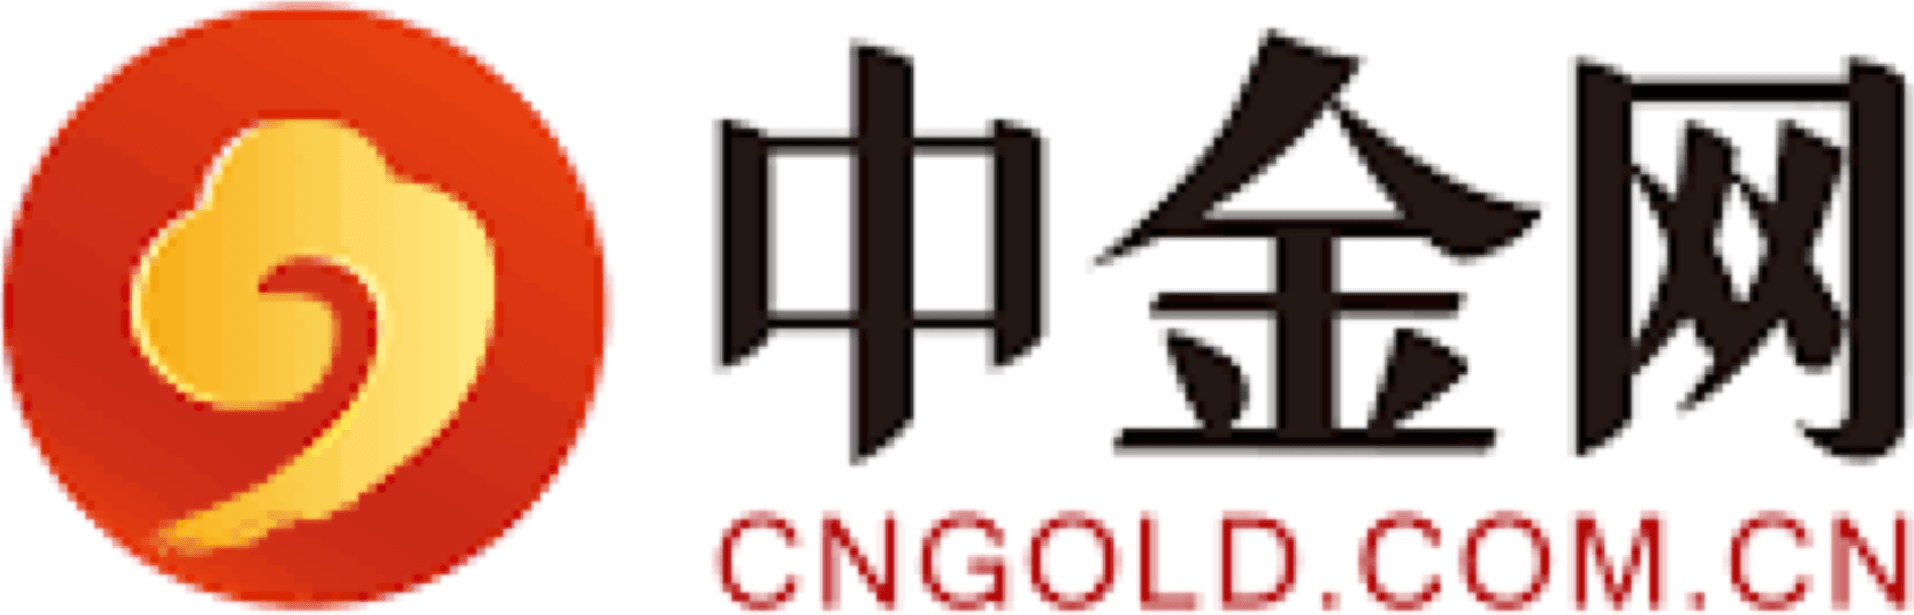 Cngold.com.cn